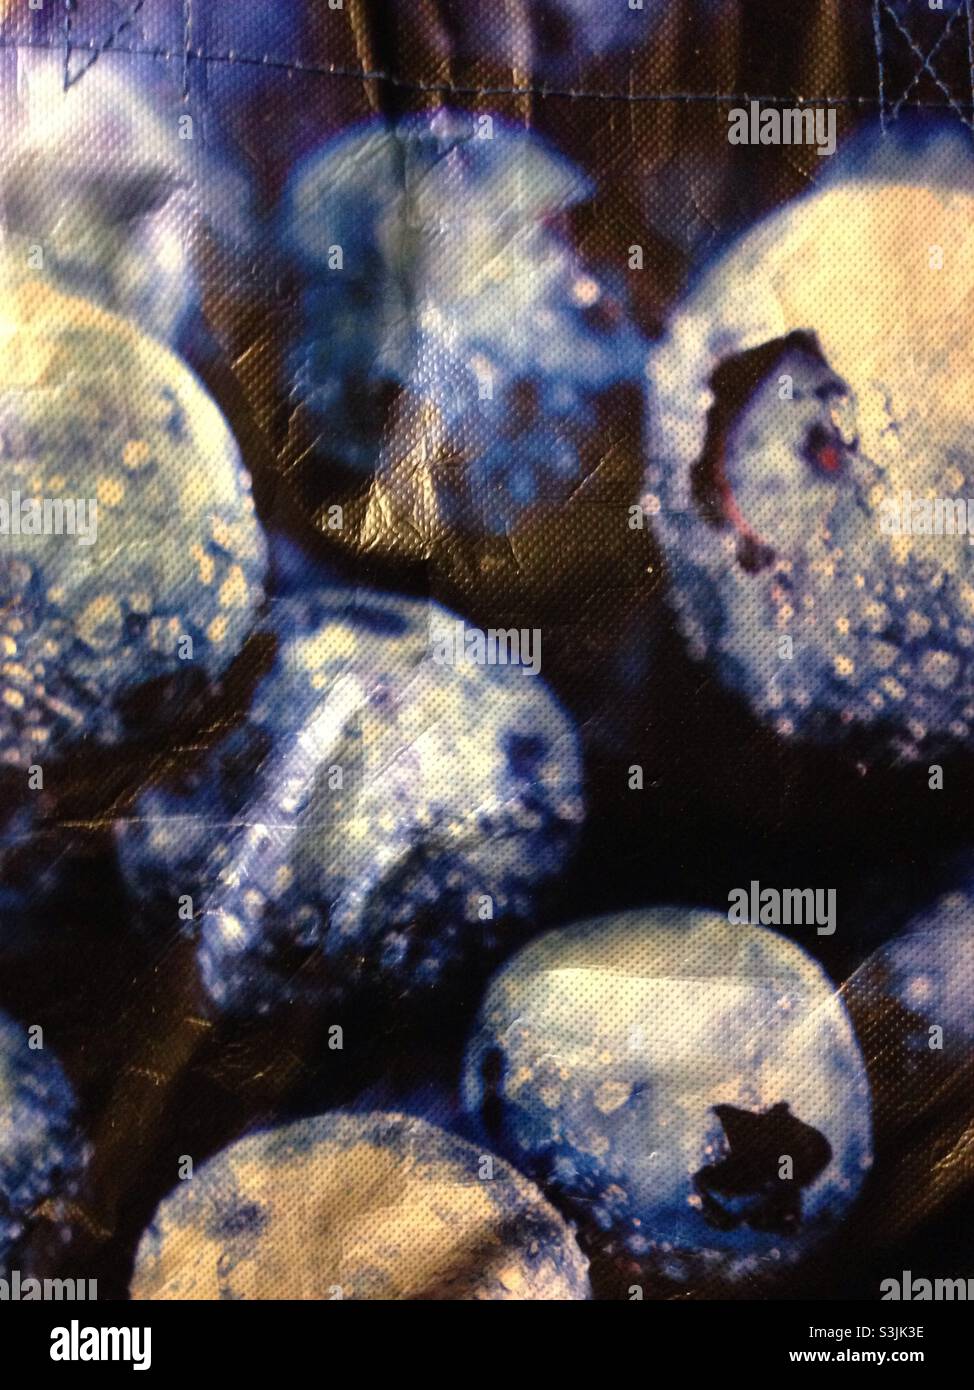 Abstraktion Nahaufnahme von gefrorenen Heidelbeeren, die in Farbe und Form umgewandelt wurden Stockfoto